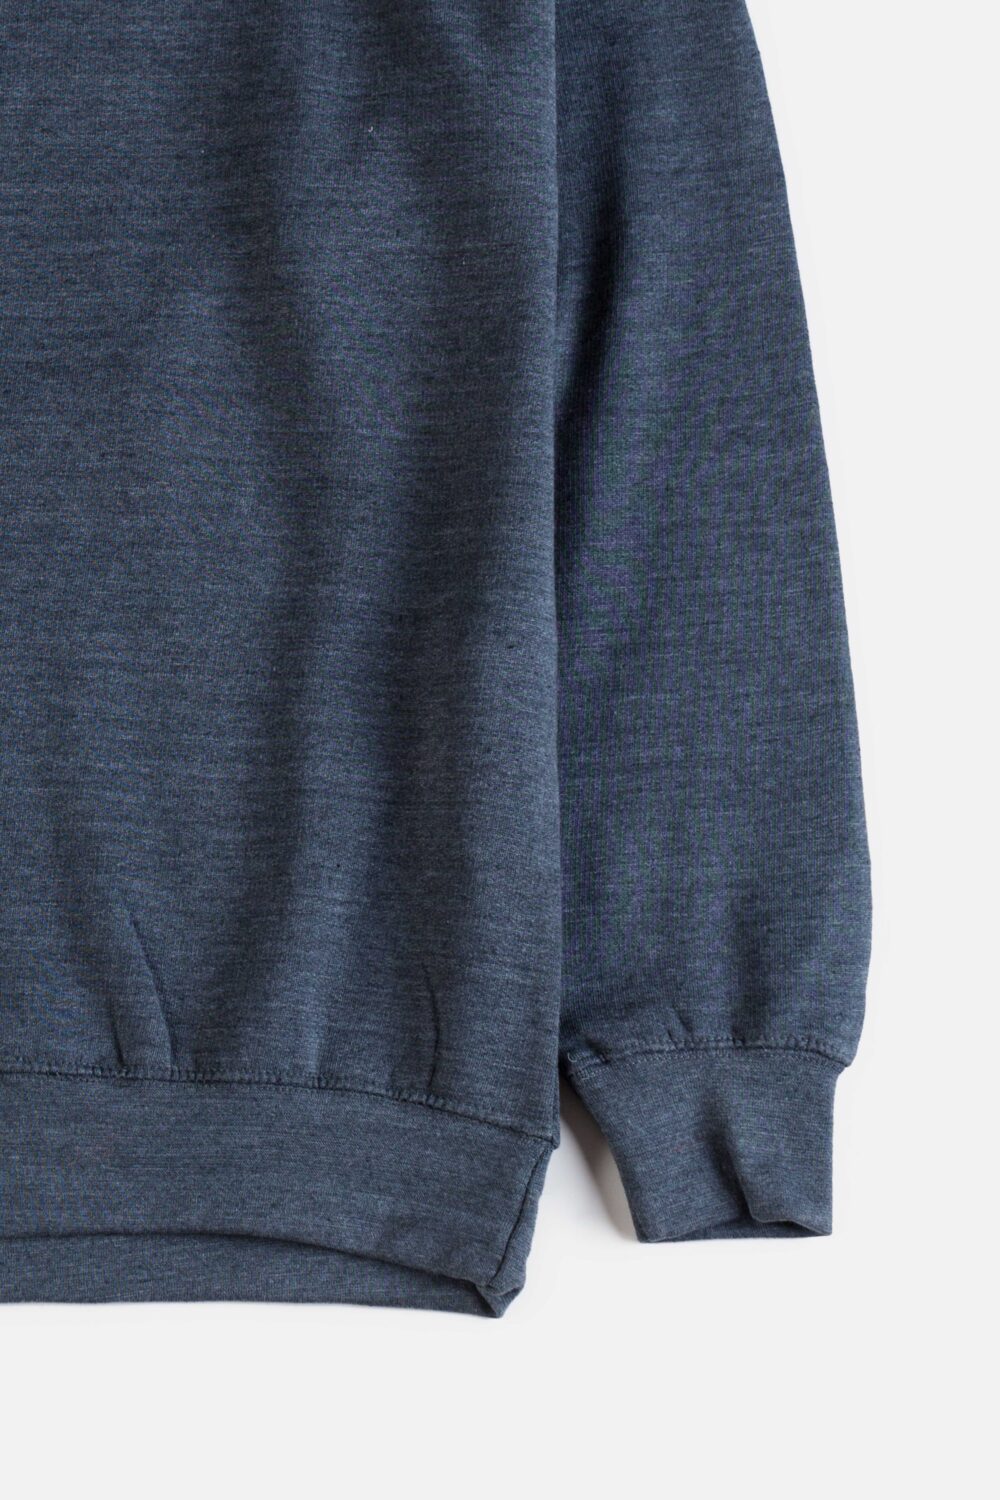 P&B Premium Fleece Sweatshirt – Charcoal